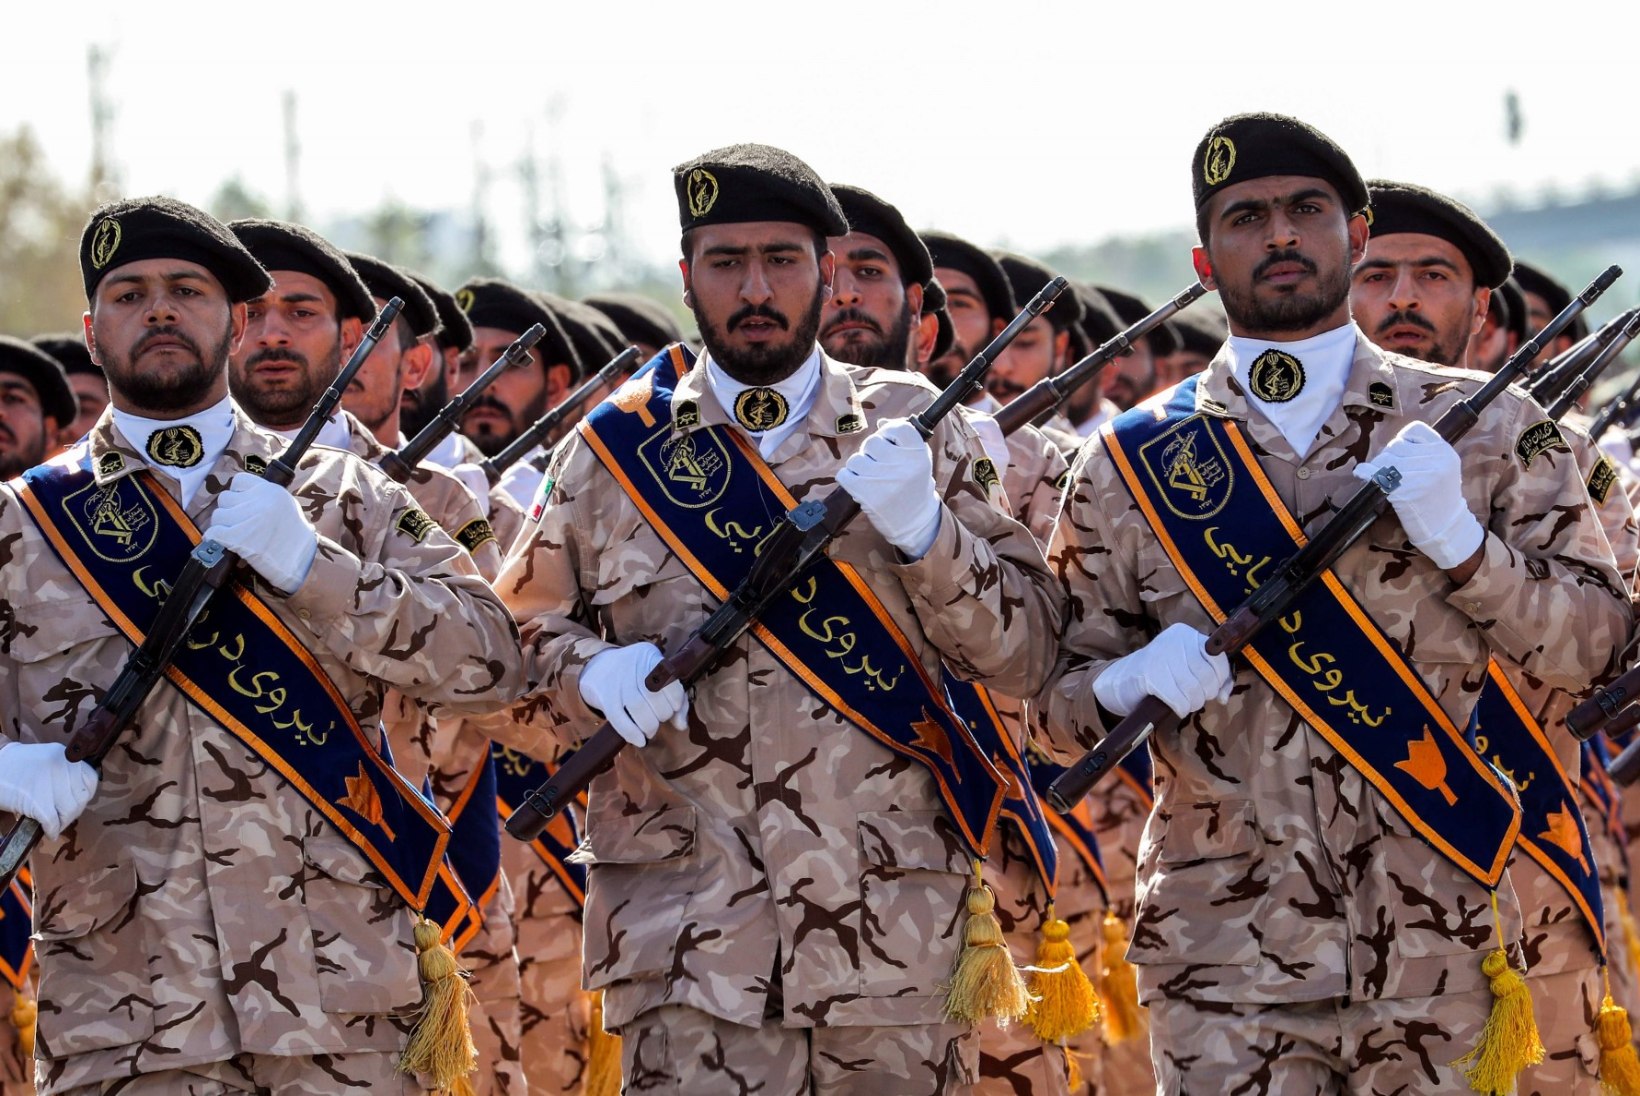 FOTOD | Iraani sõjaväeparaadil sai mitukümmend inimest surma